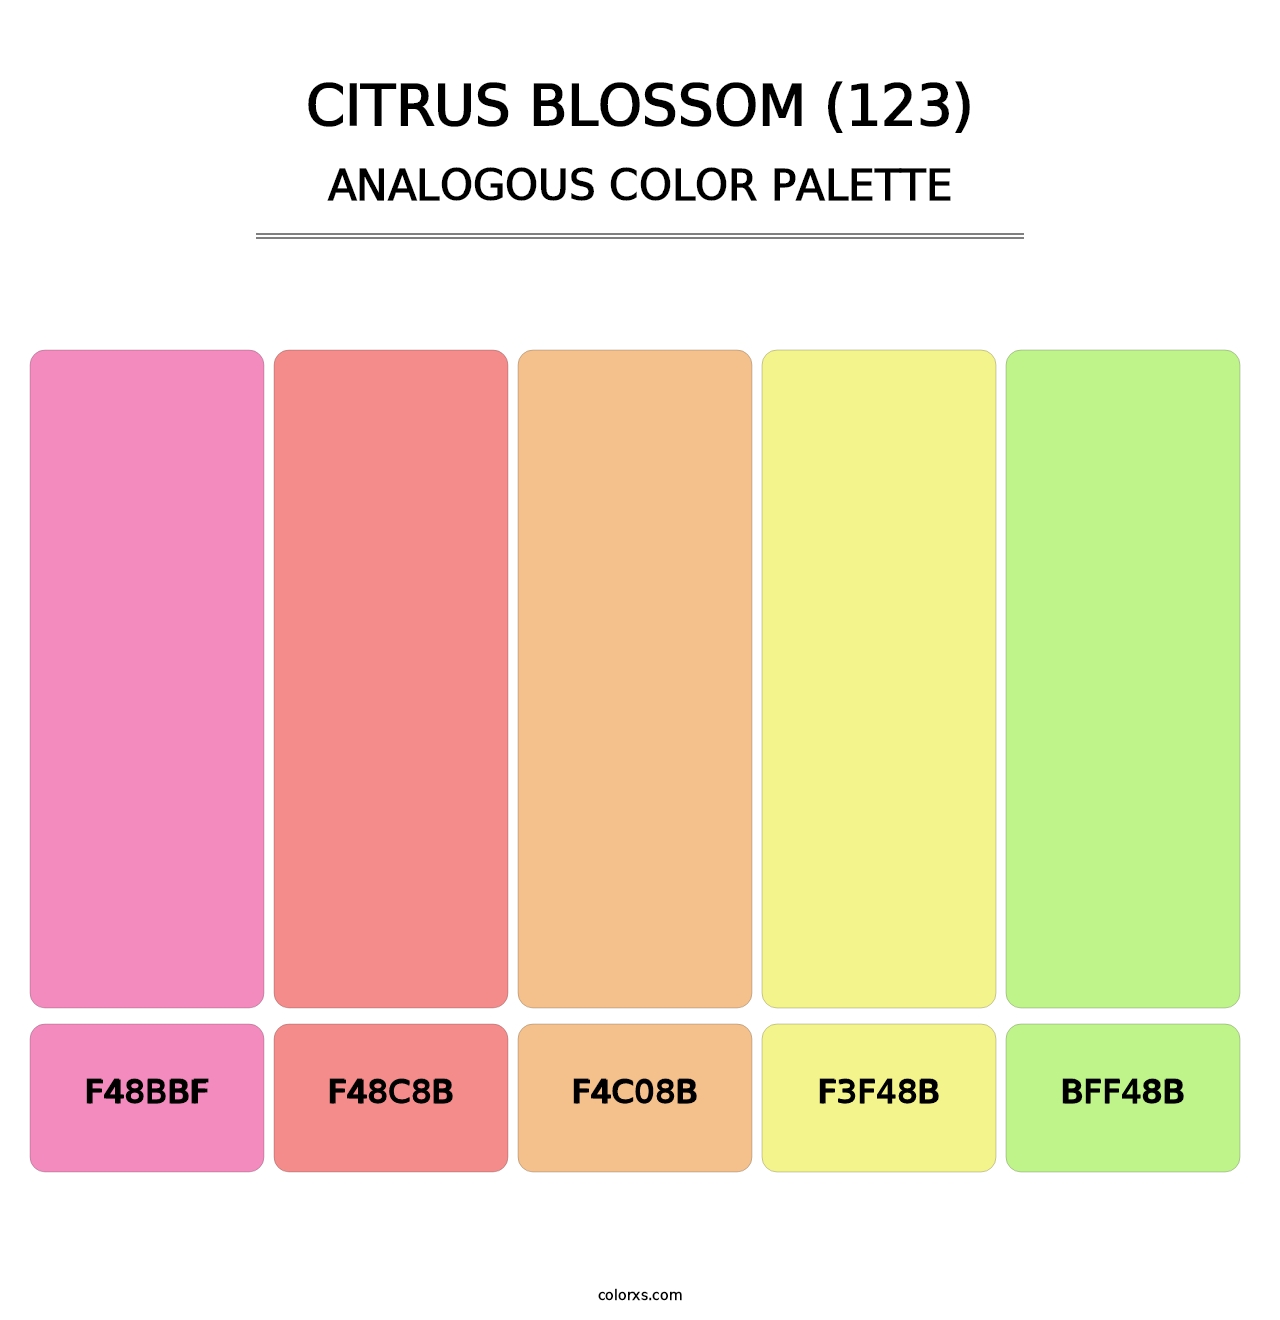 Citrus Blossom (123) - Analogous Color Palette